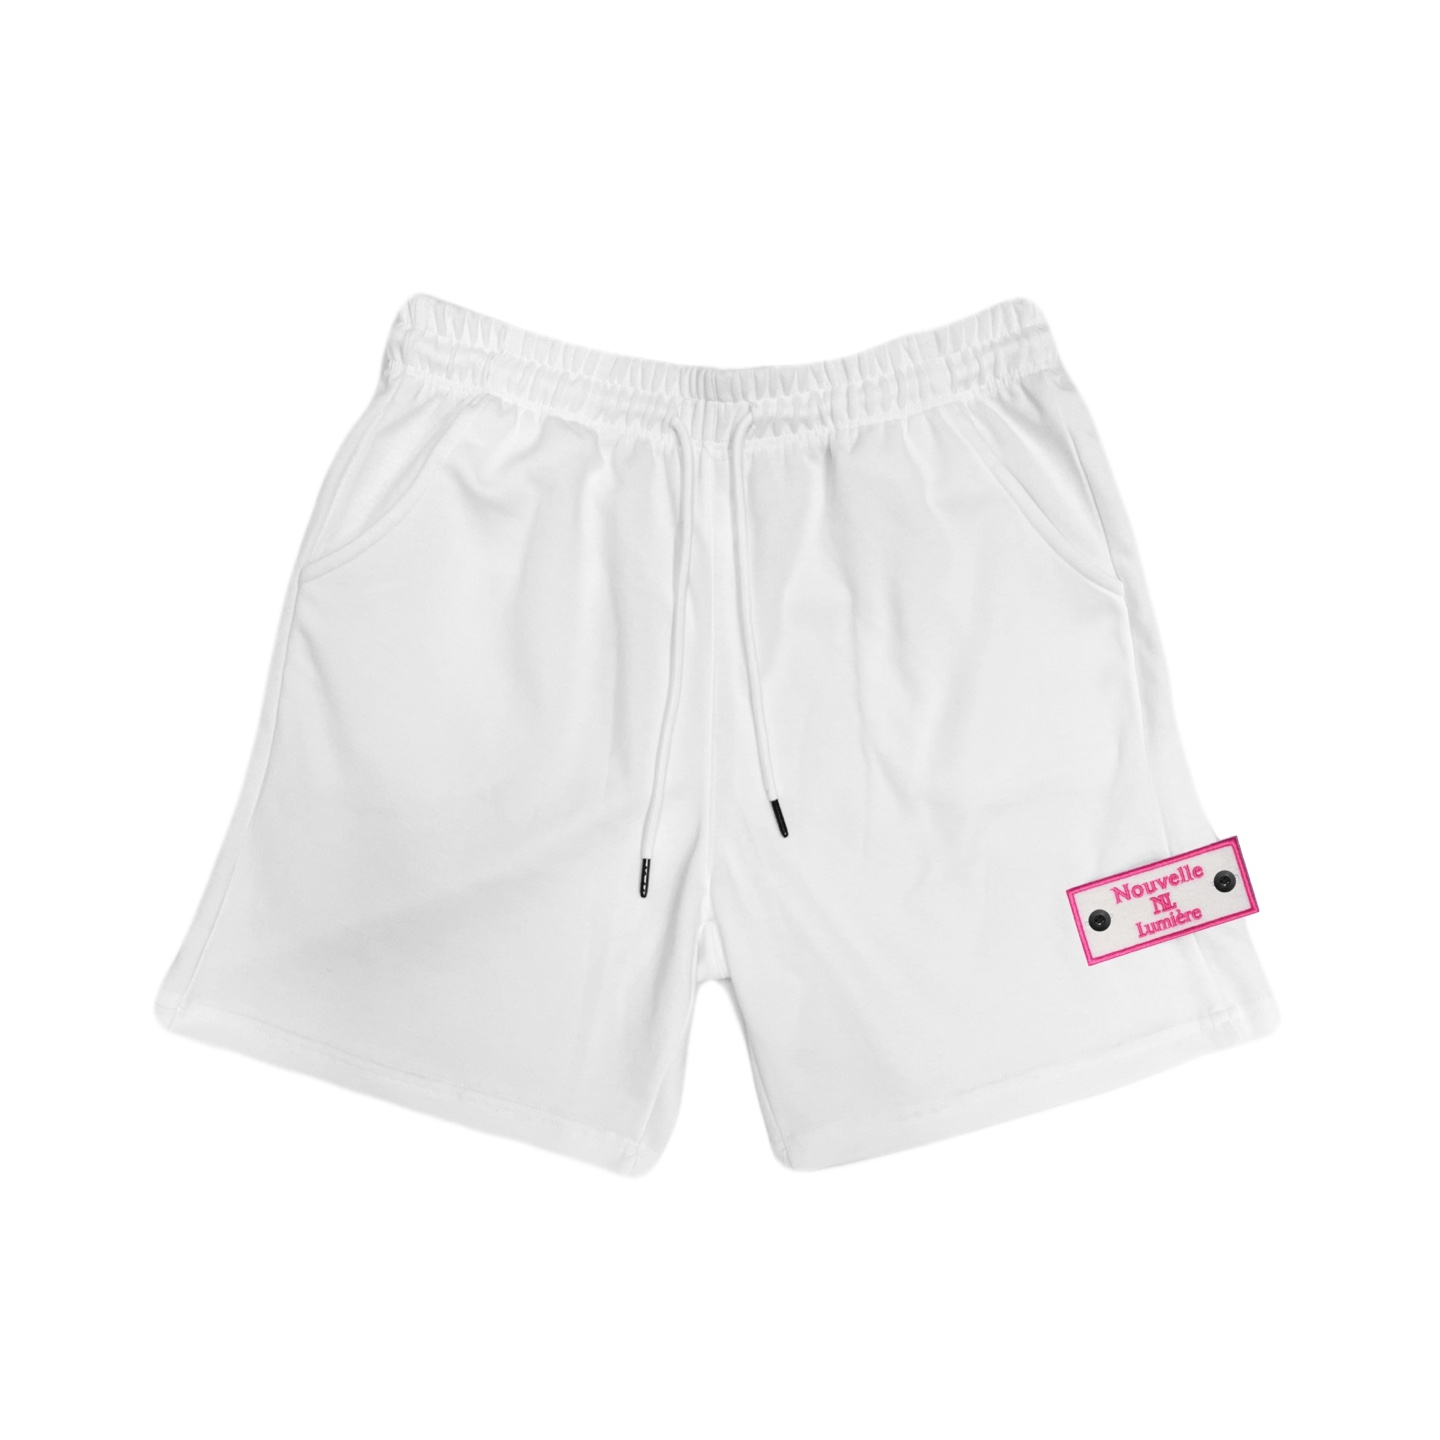 [NUBELLEMIER] 经典款 白色 短裤 (Pink edition)